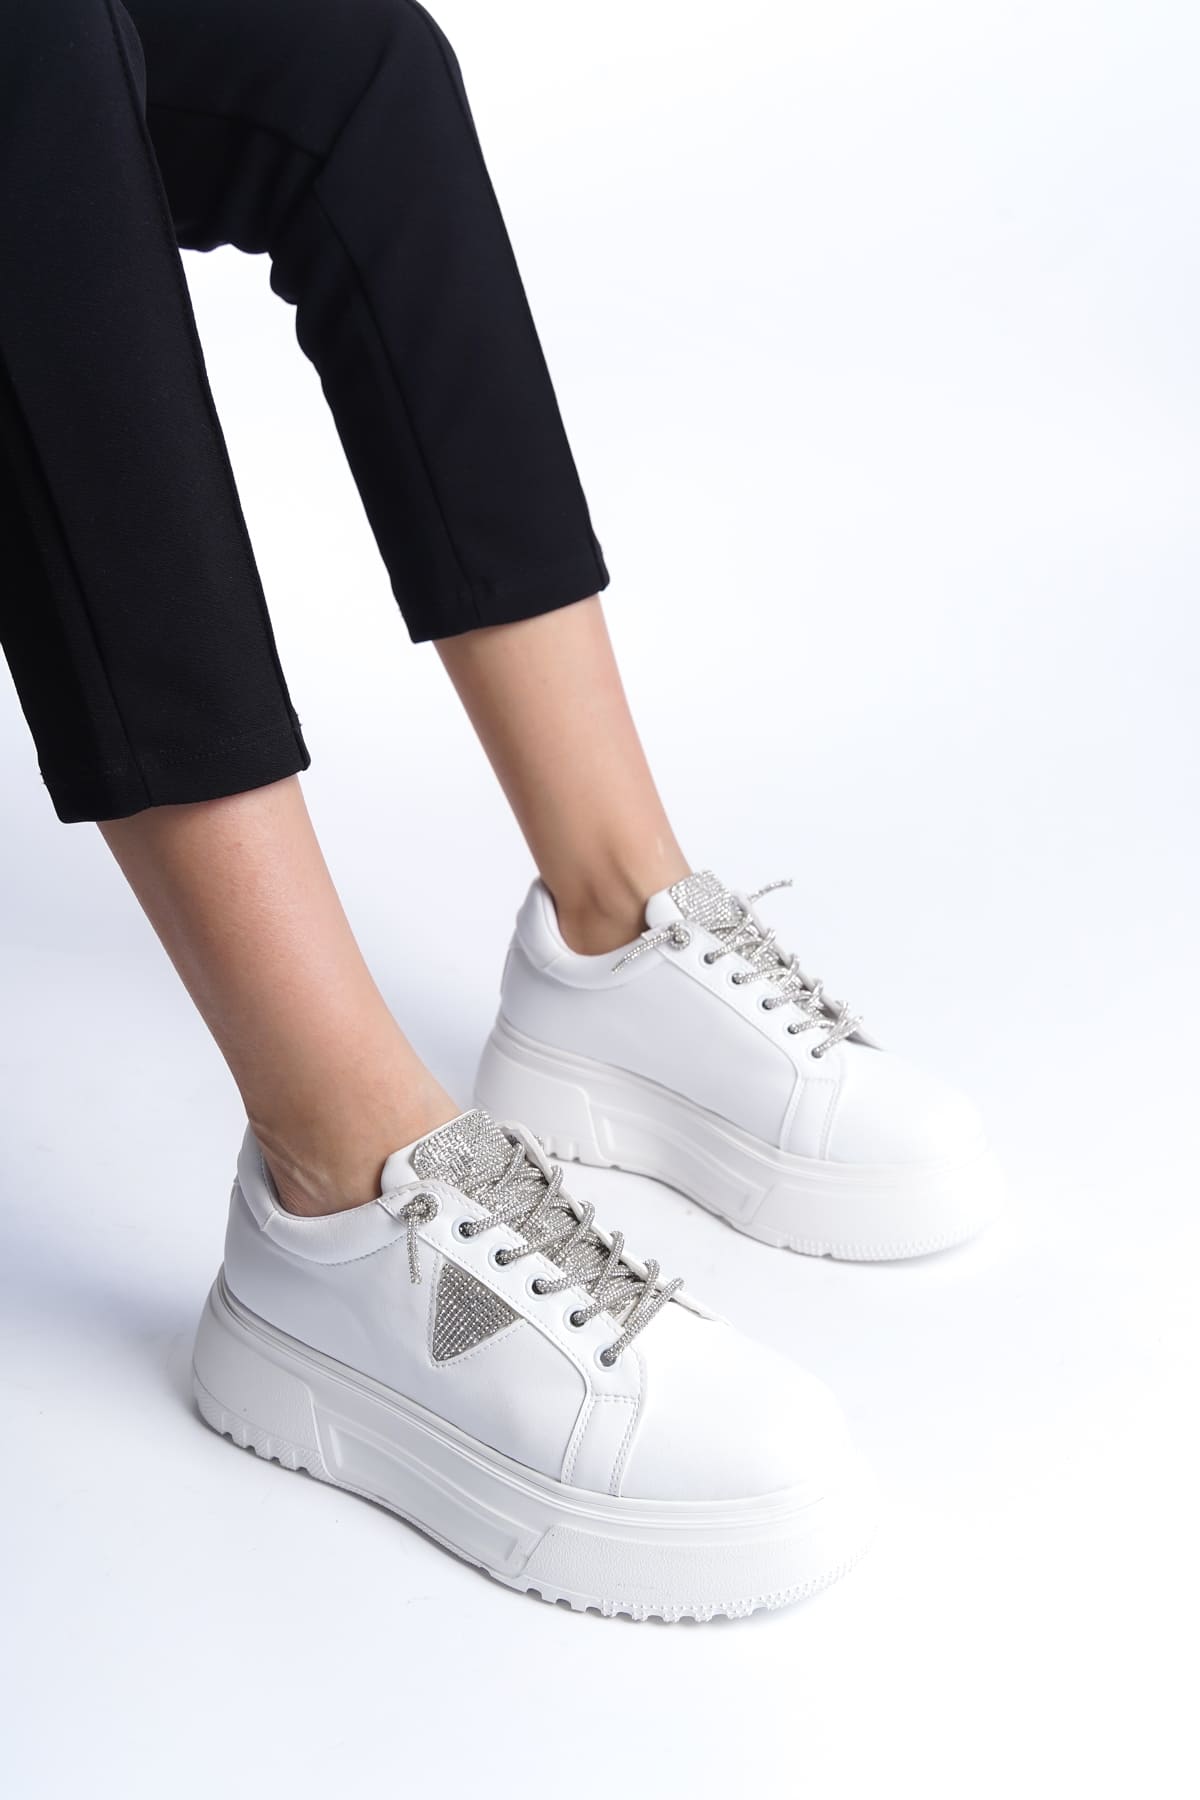 AYAS Bağcıklı Ortopedik Taban Taşlı Kadın Sneaker Ayakkabı  Beyaz